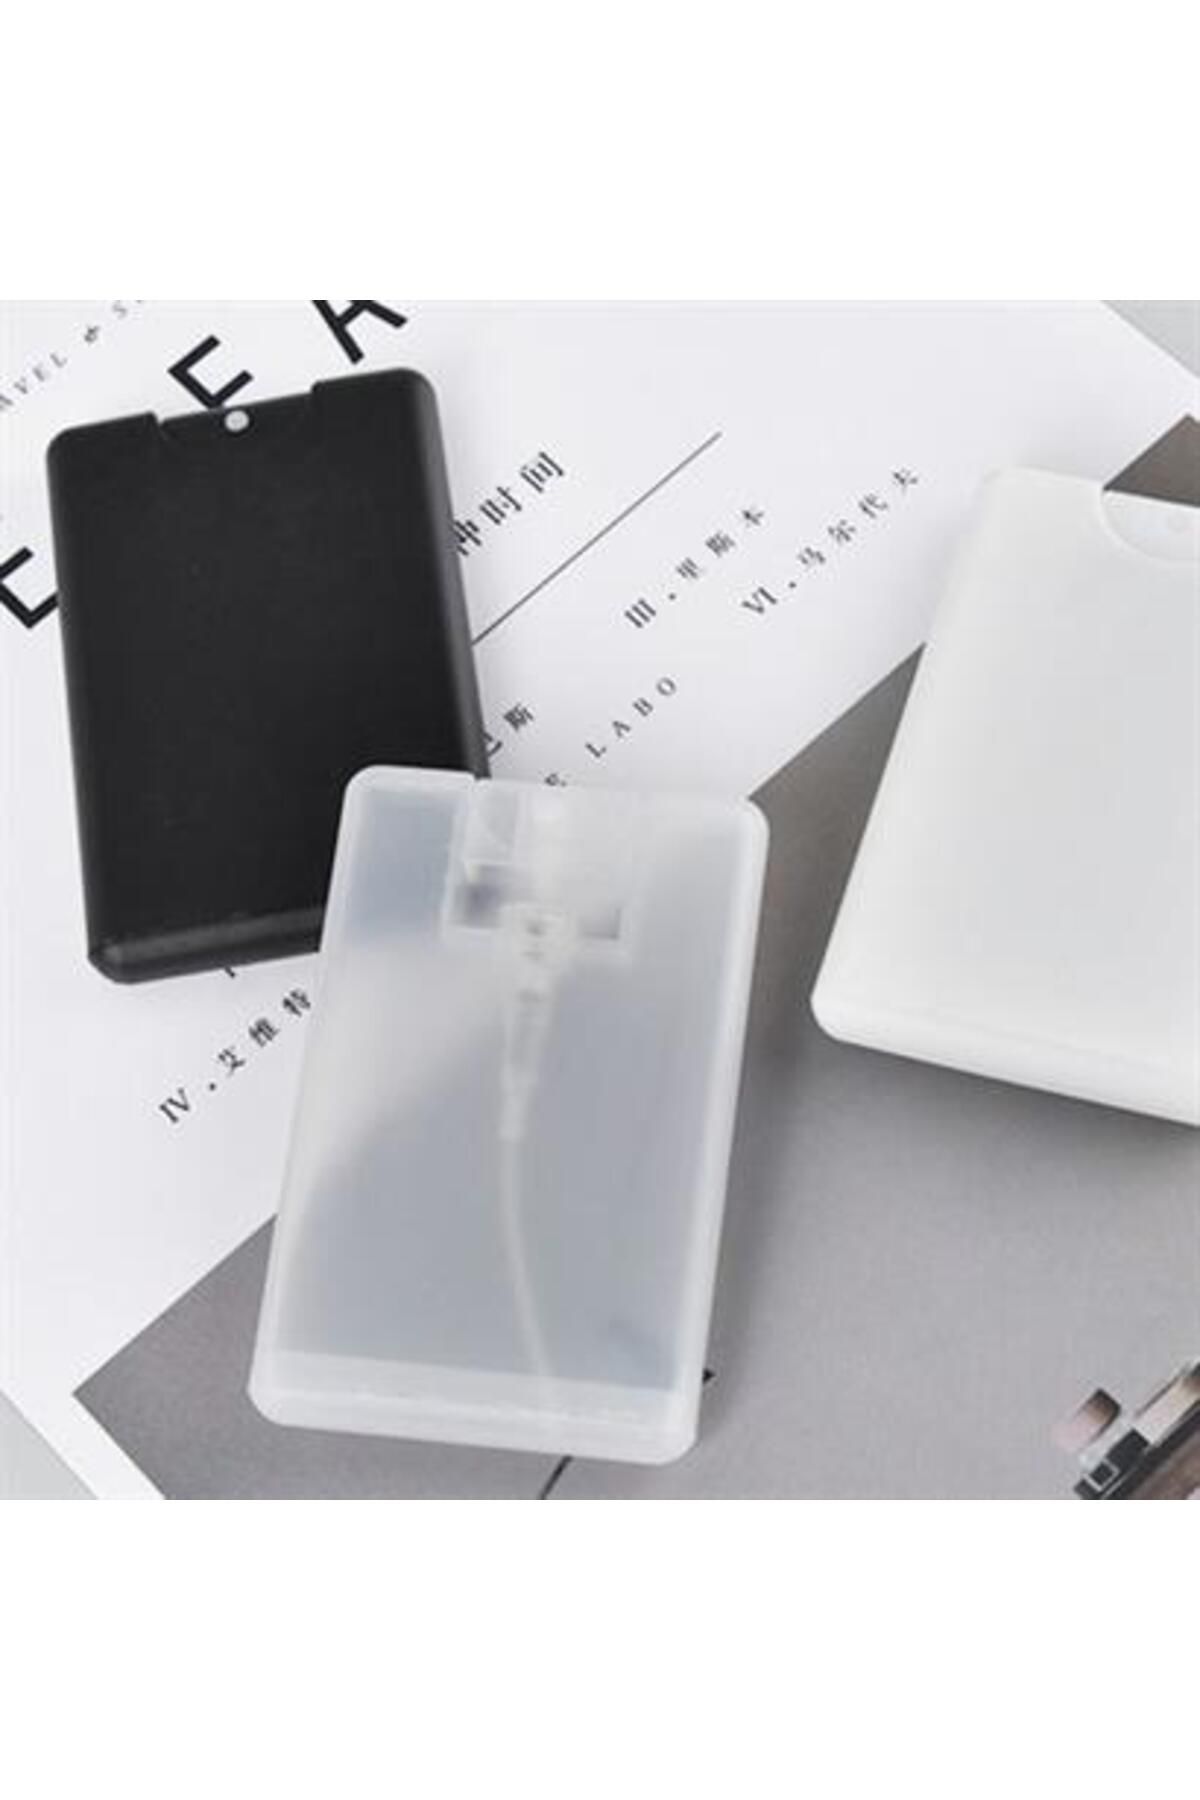 Genel Markalar 20 ml Doldurulabilir Parfüm Şişesi Kolay Taşınabilir Çok Amaçlı Mini Cep Boy Zhd-aras36554